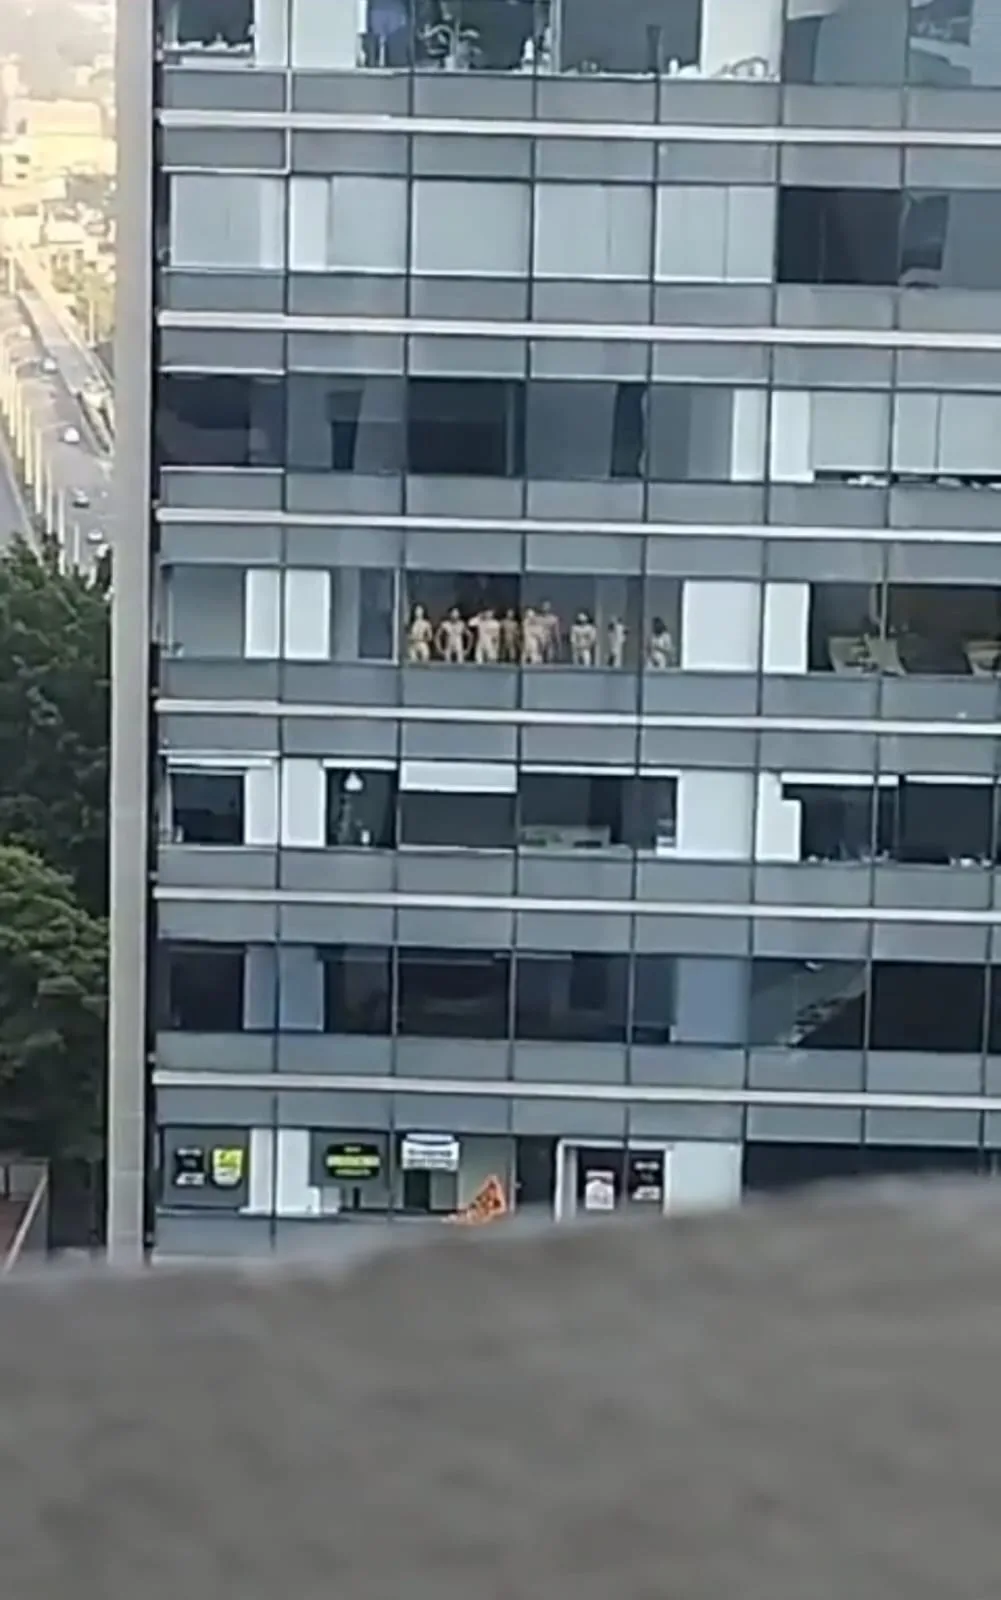 En edificio de Medellín aparecen personas desnudas en las ventanas, vecinos denuncia este hecho